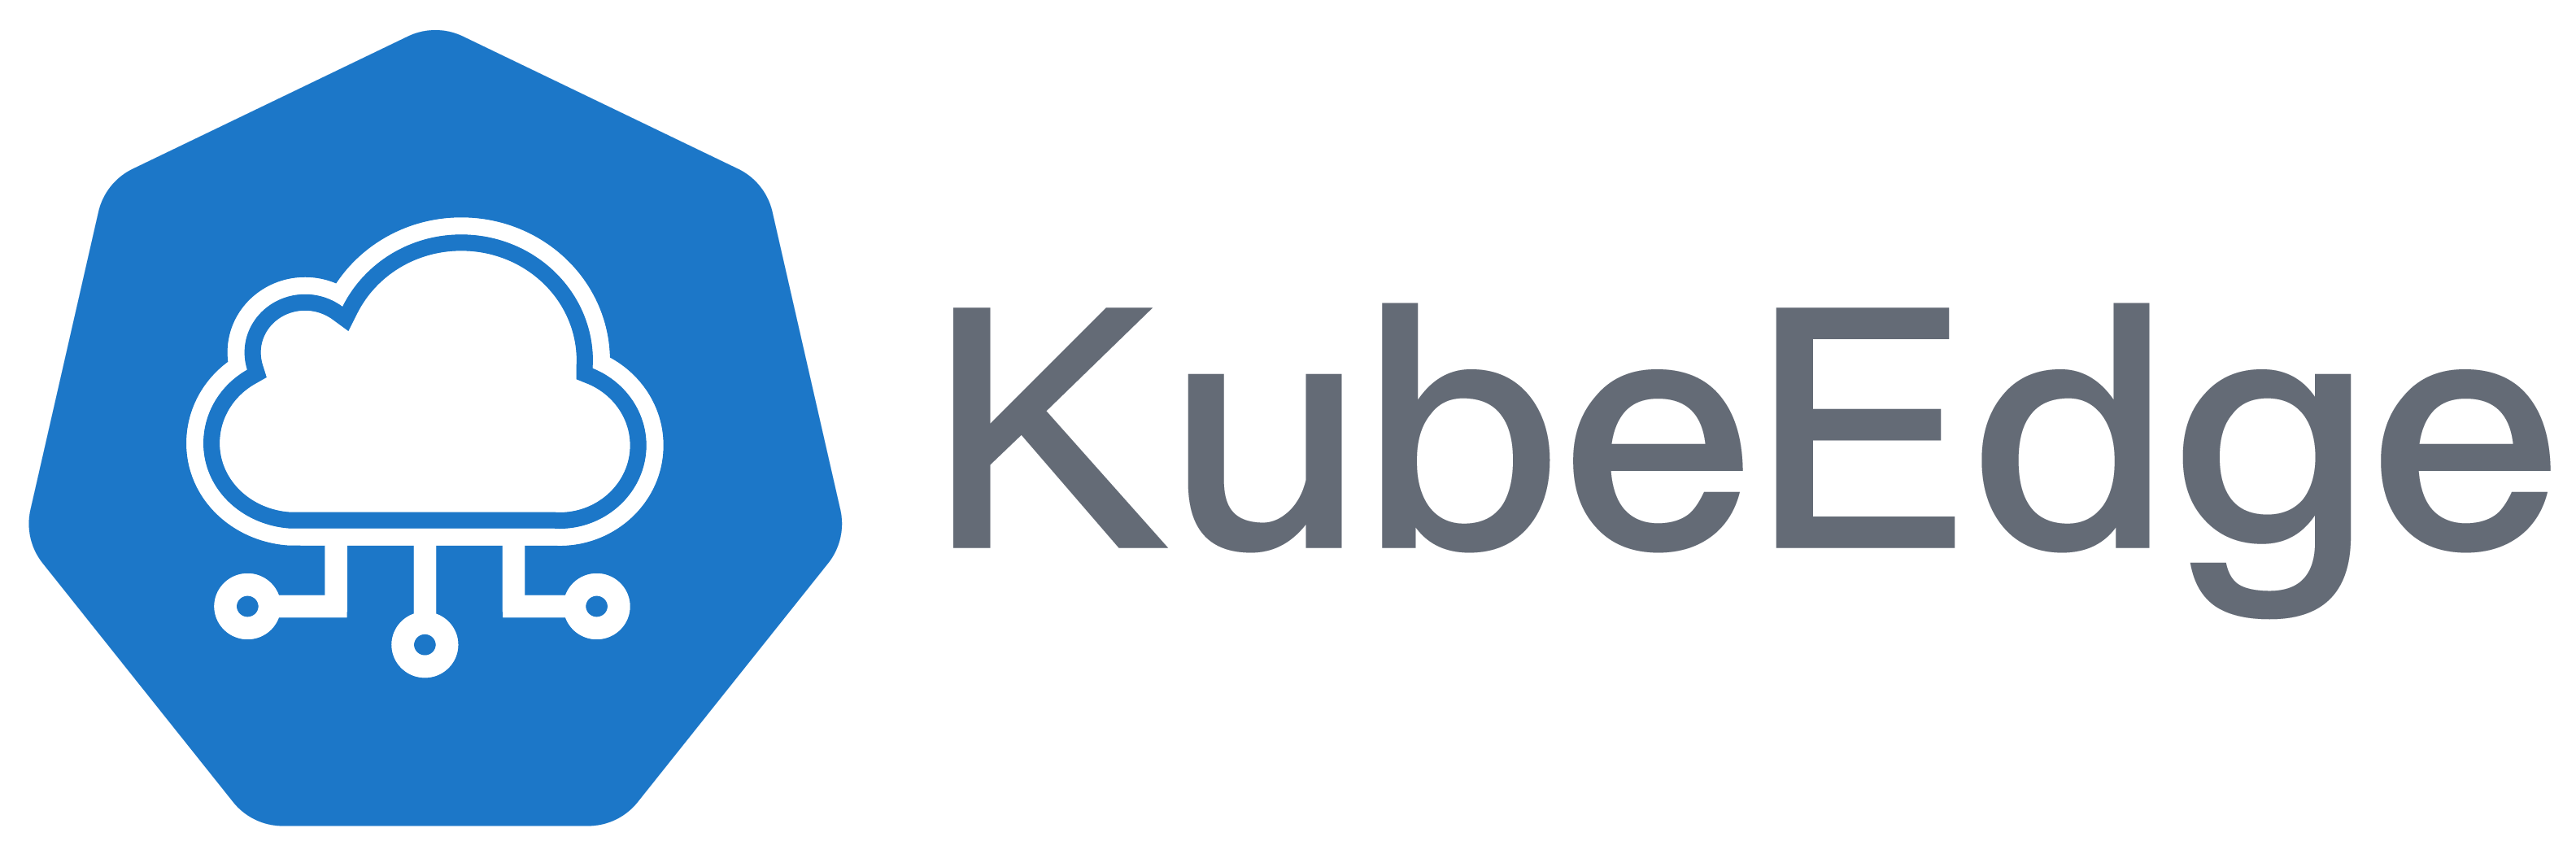 大规模 IoT 边缘容器集群管理的几种架构 -4-Kubeedge